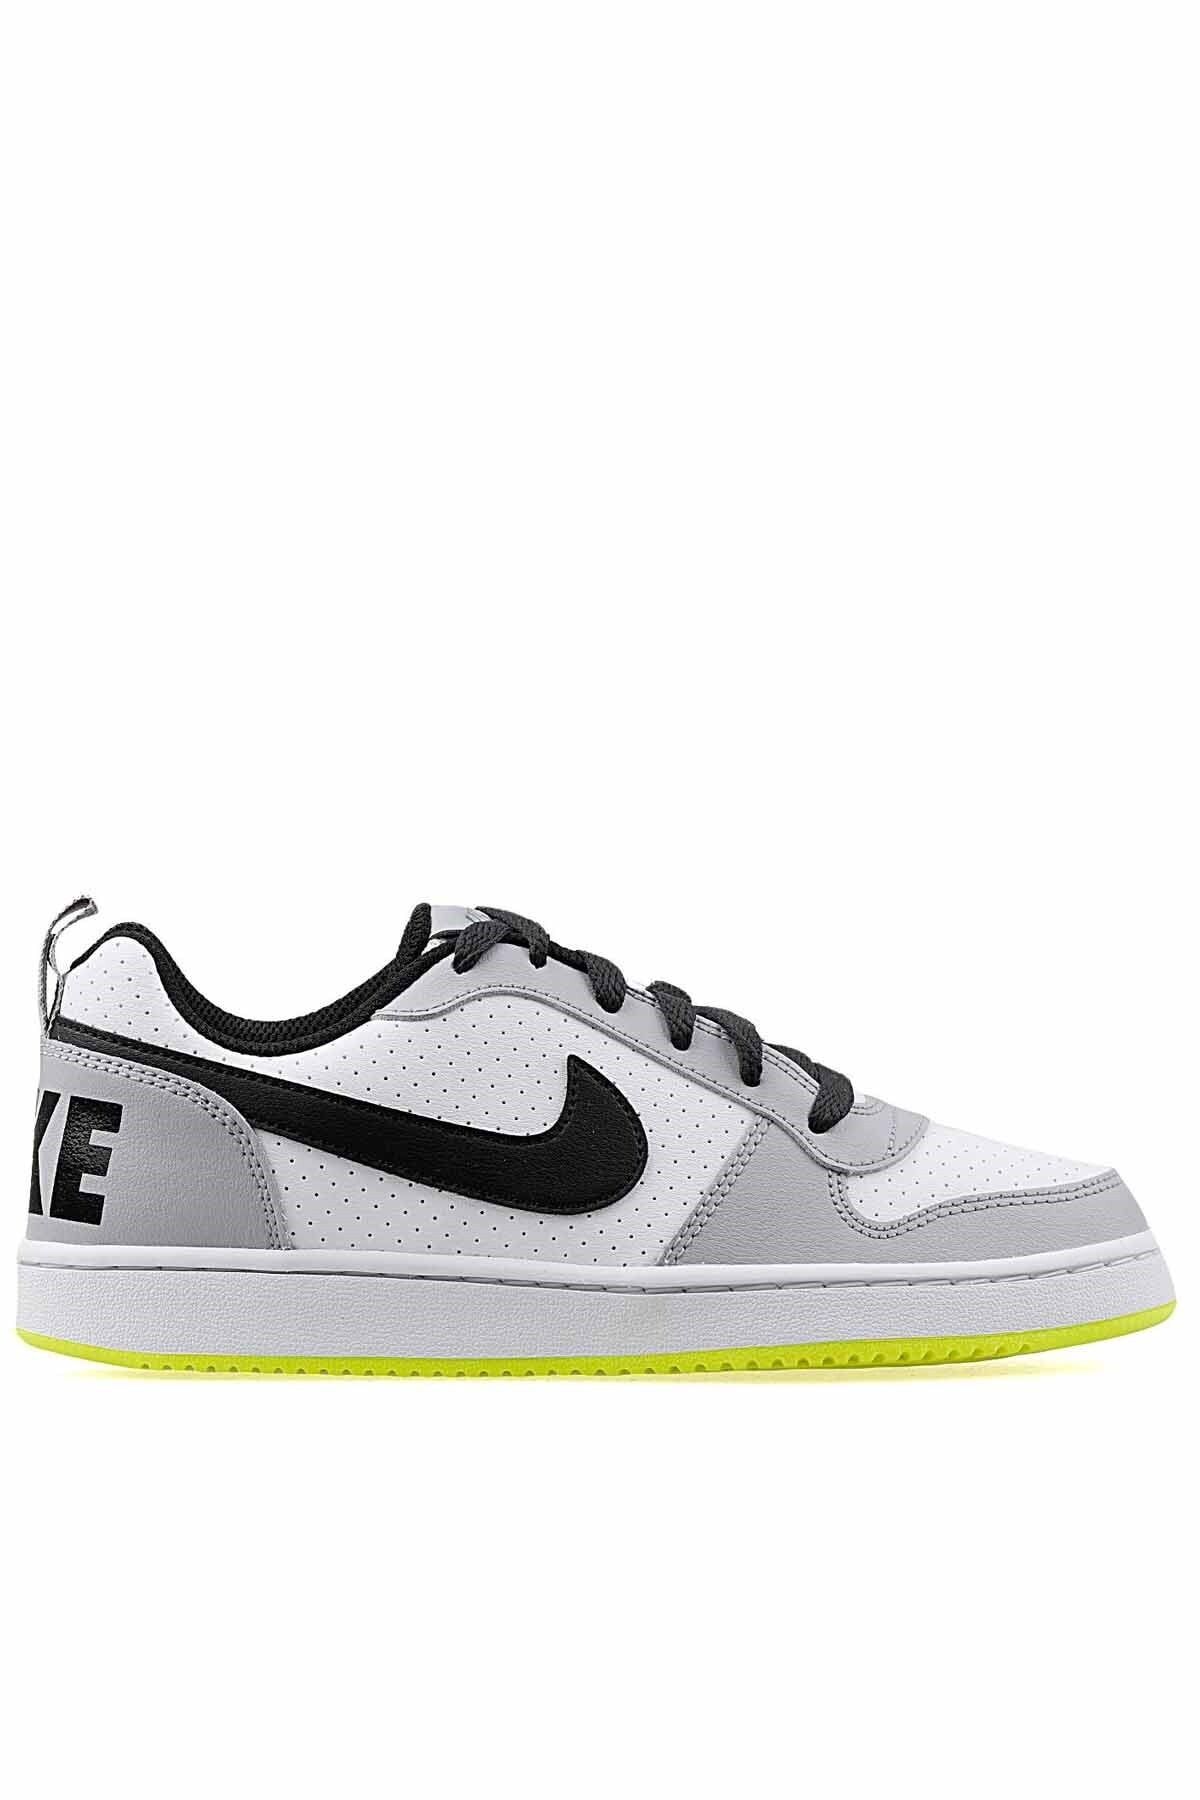 Nike Kadın Beyaz Günlük Spor Ayakkabı 839985-104 Court Borough Low gs